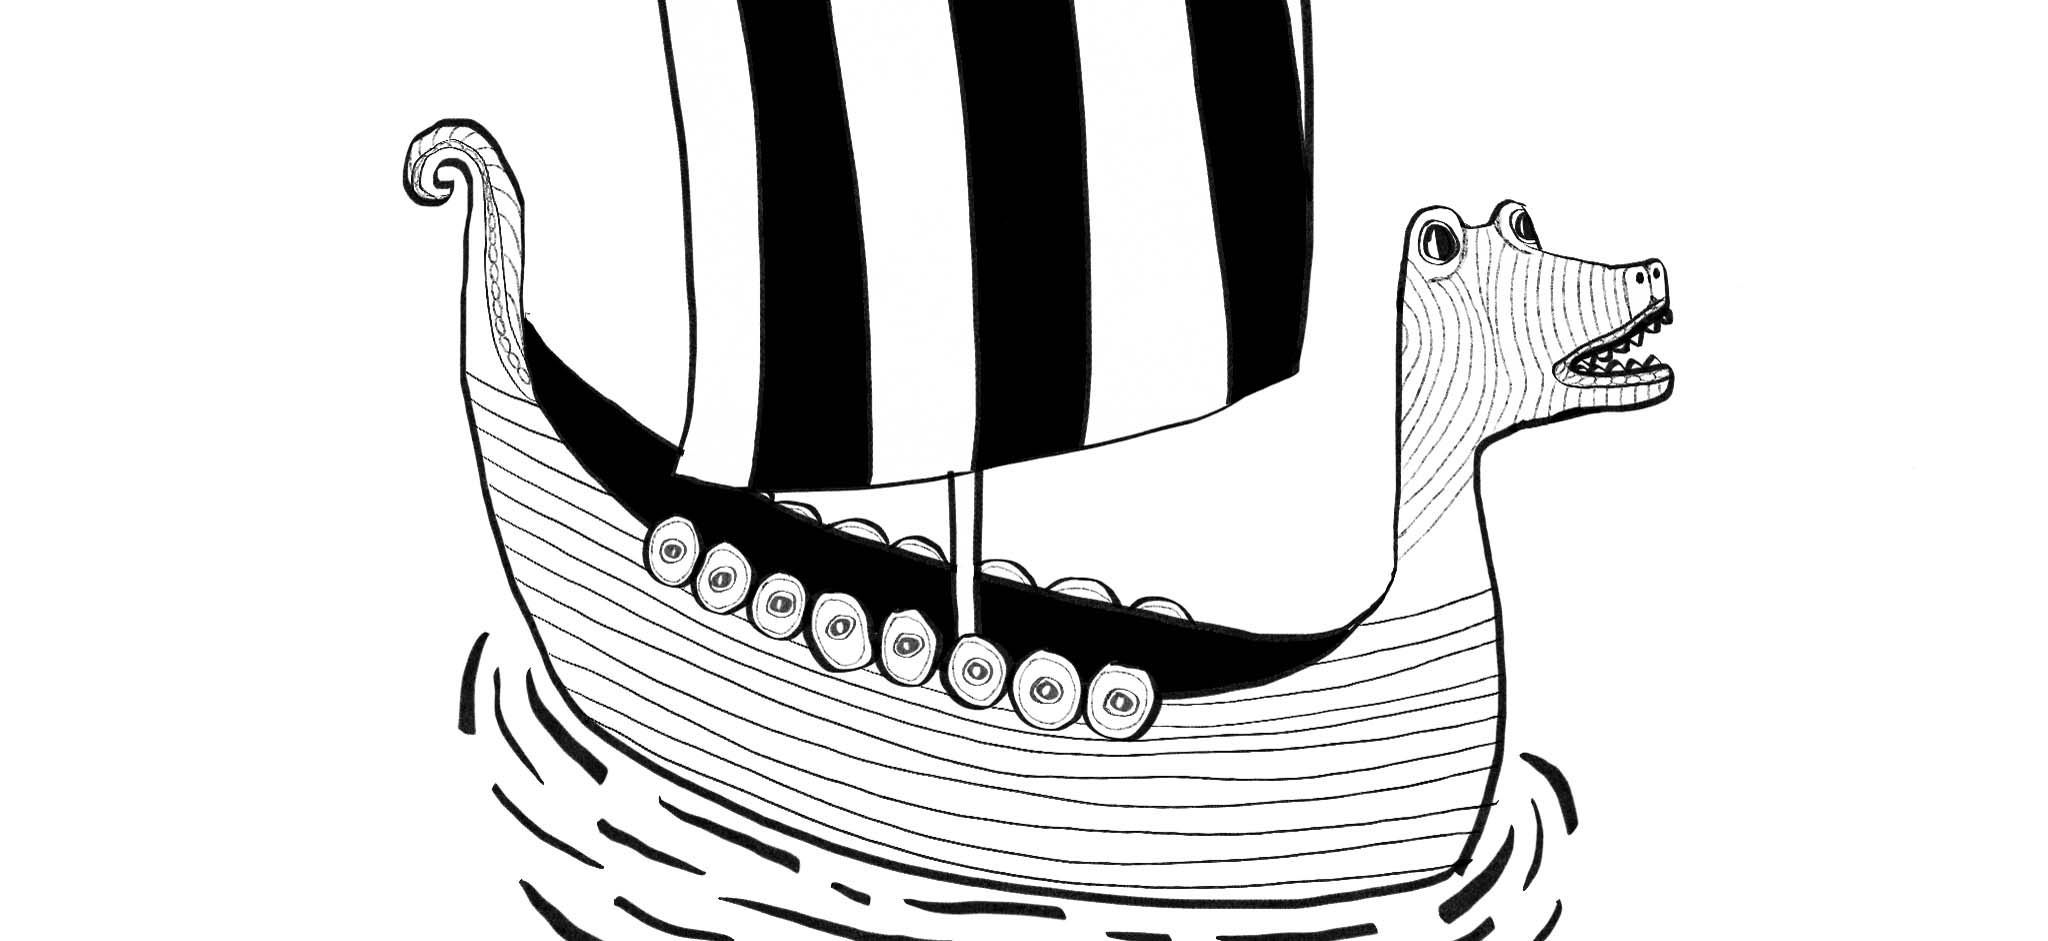 Logga föreställande vikingabåt i svartvitt med sköldar på sidan och drakhuvud framtill.